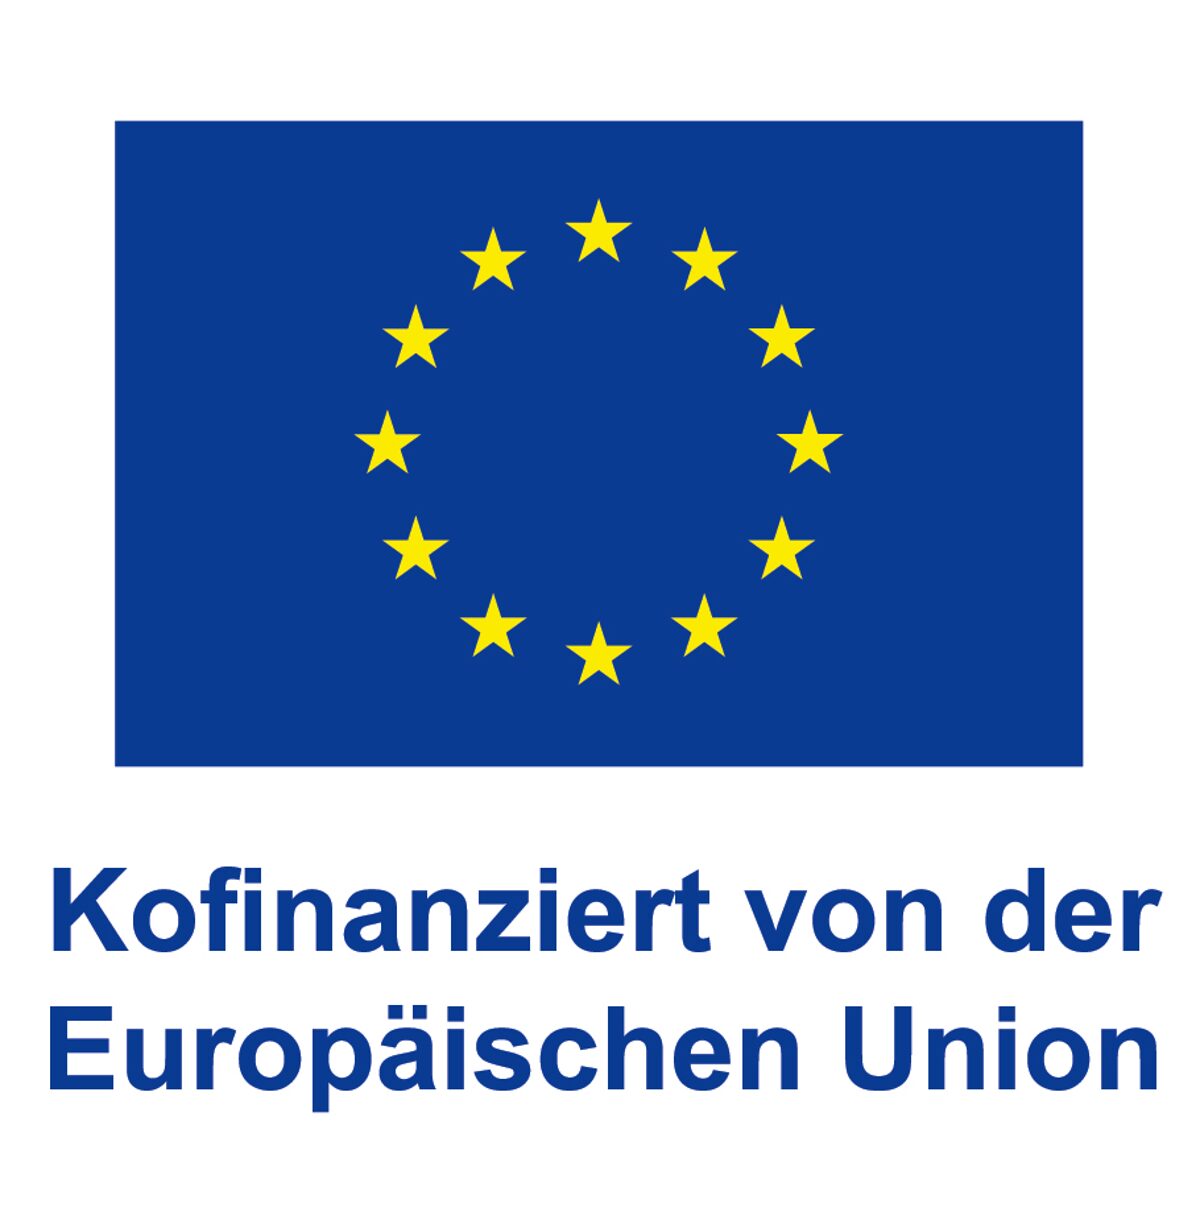 Kofinanziert_von_der_Europäischen_Union_POS